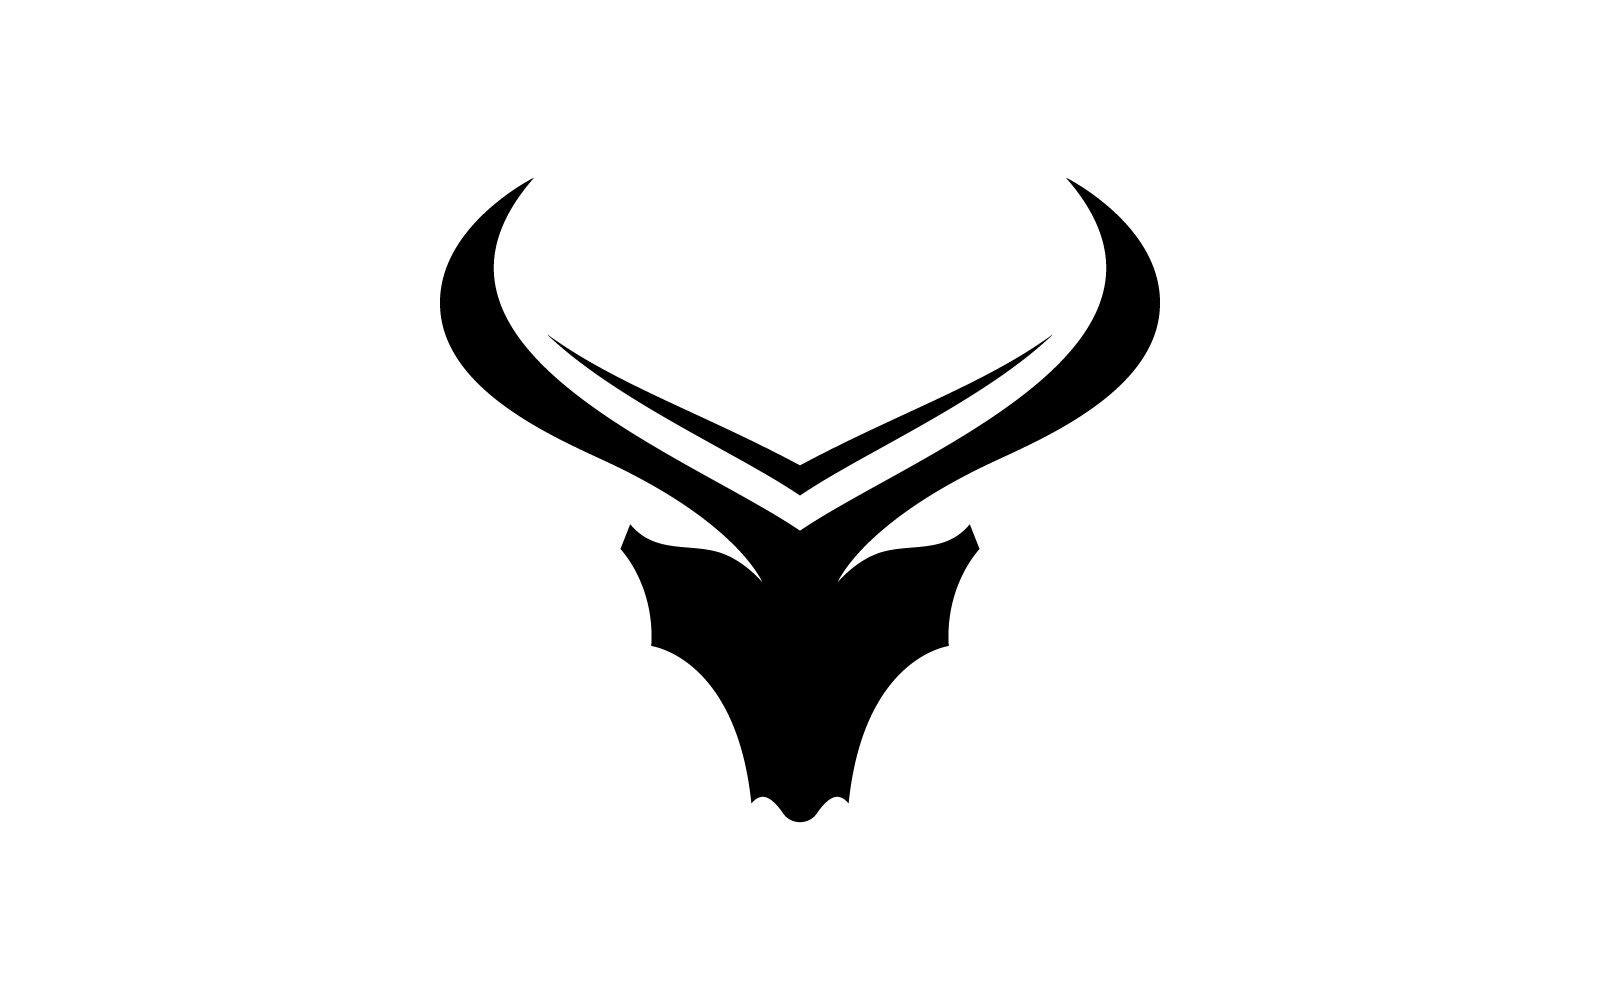 Bull horn logo symbols vector V7